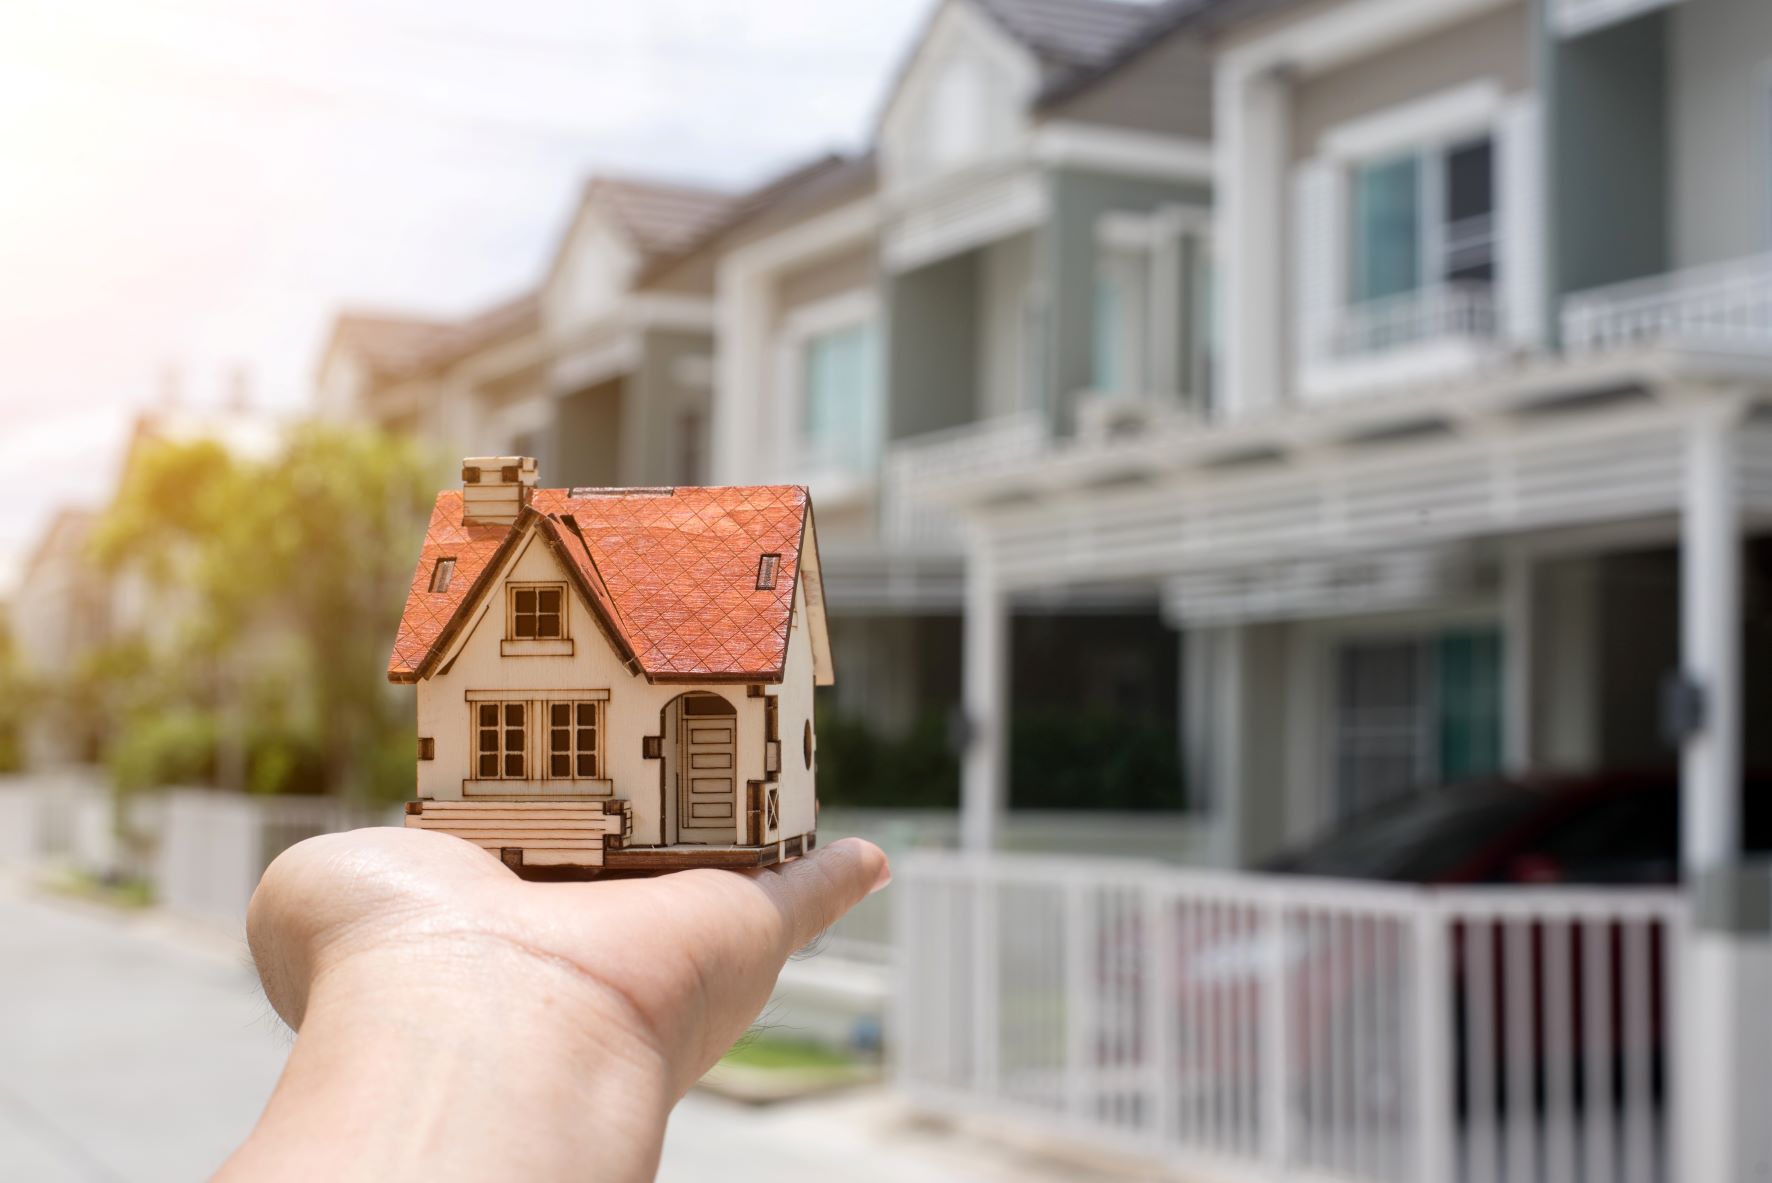 Satılık ve kiralık ev fiyatlarının en çok arttığı iller belli oldu